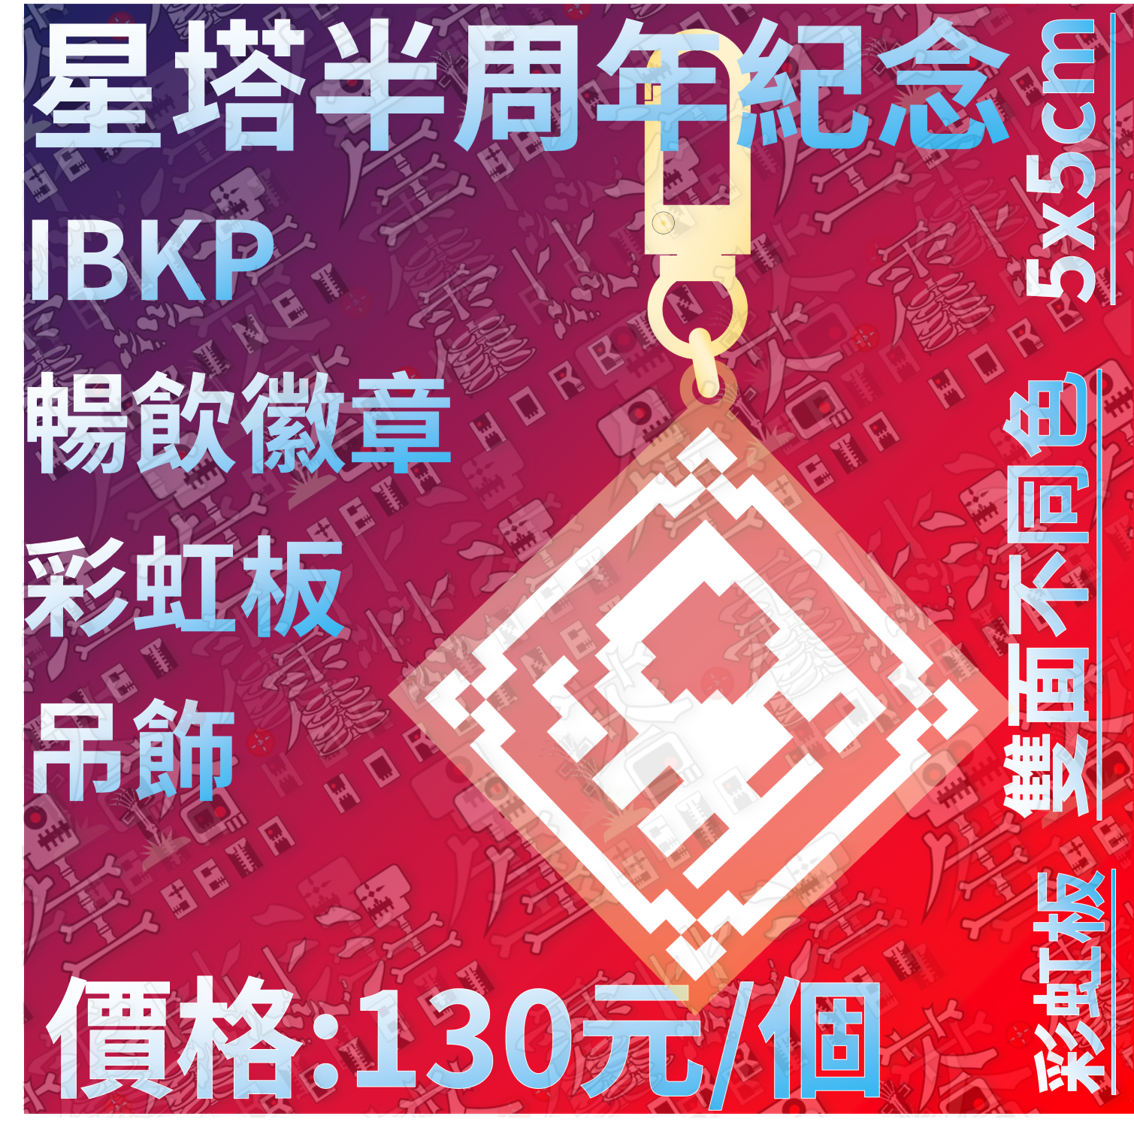 【半周年紀念】IBKP暢飲徽章彩虹板吊飾